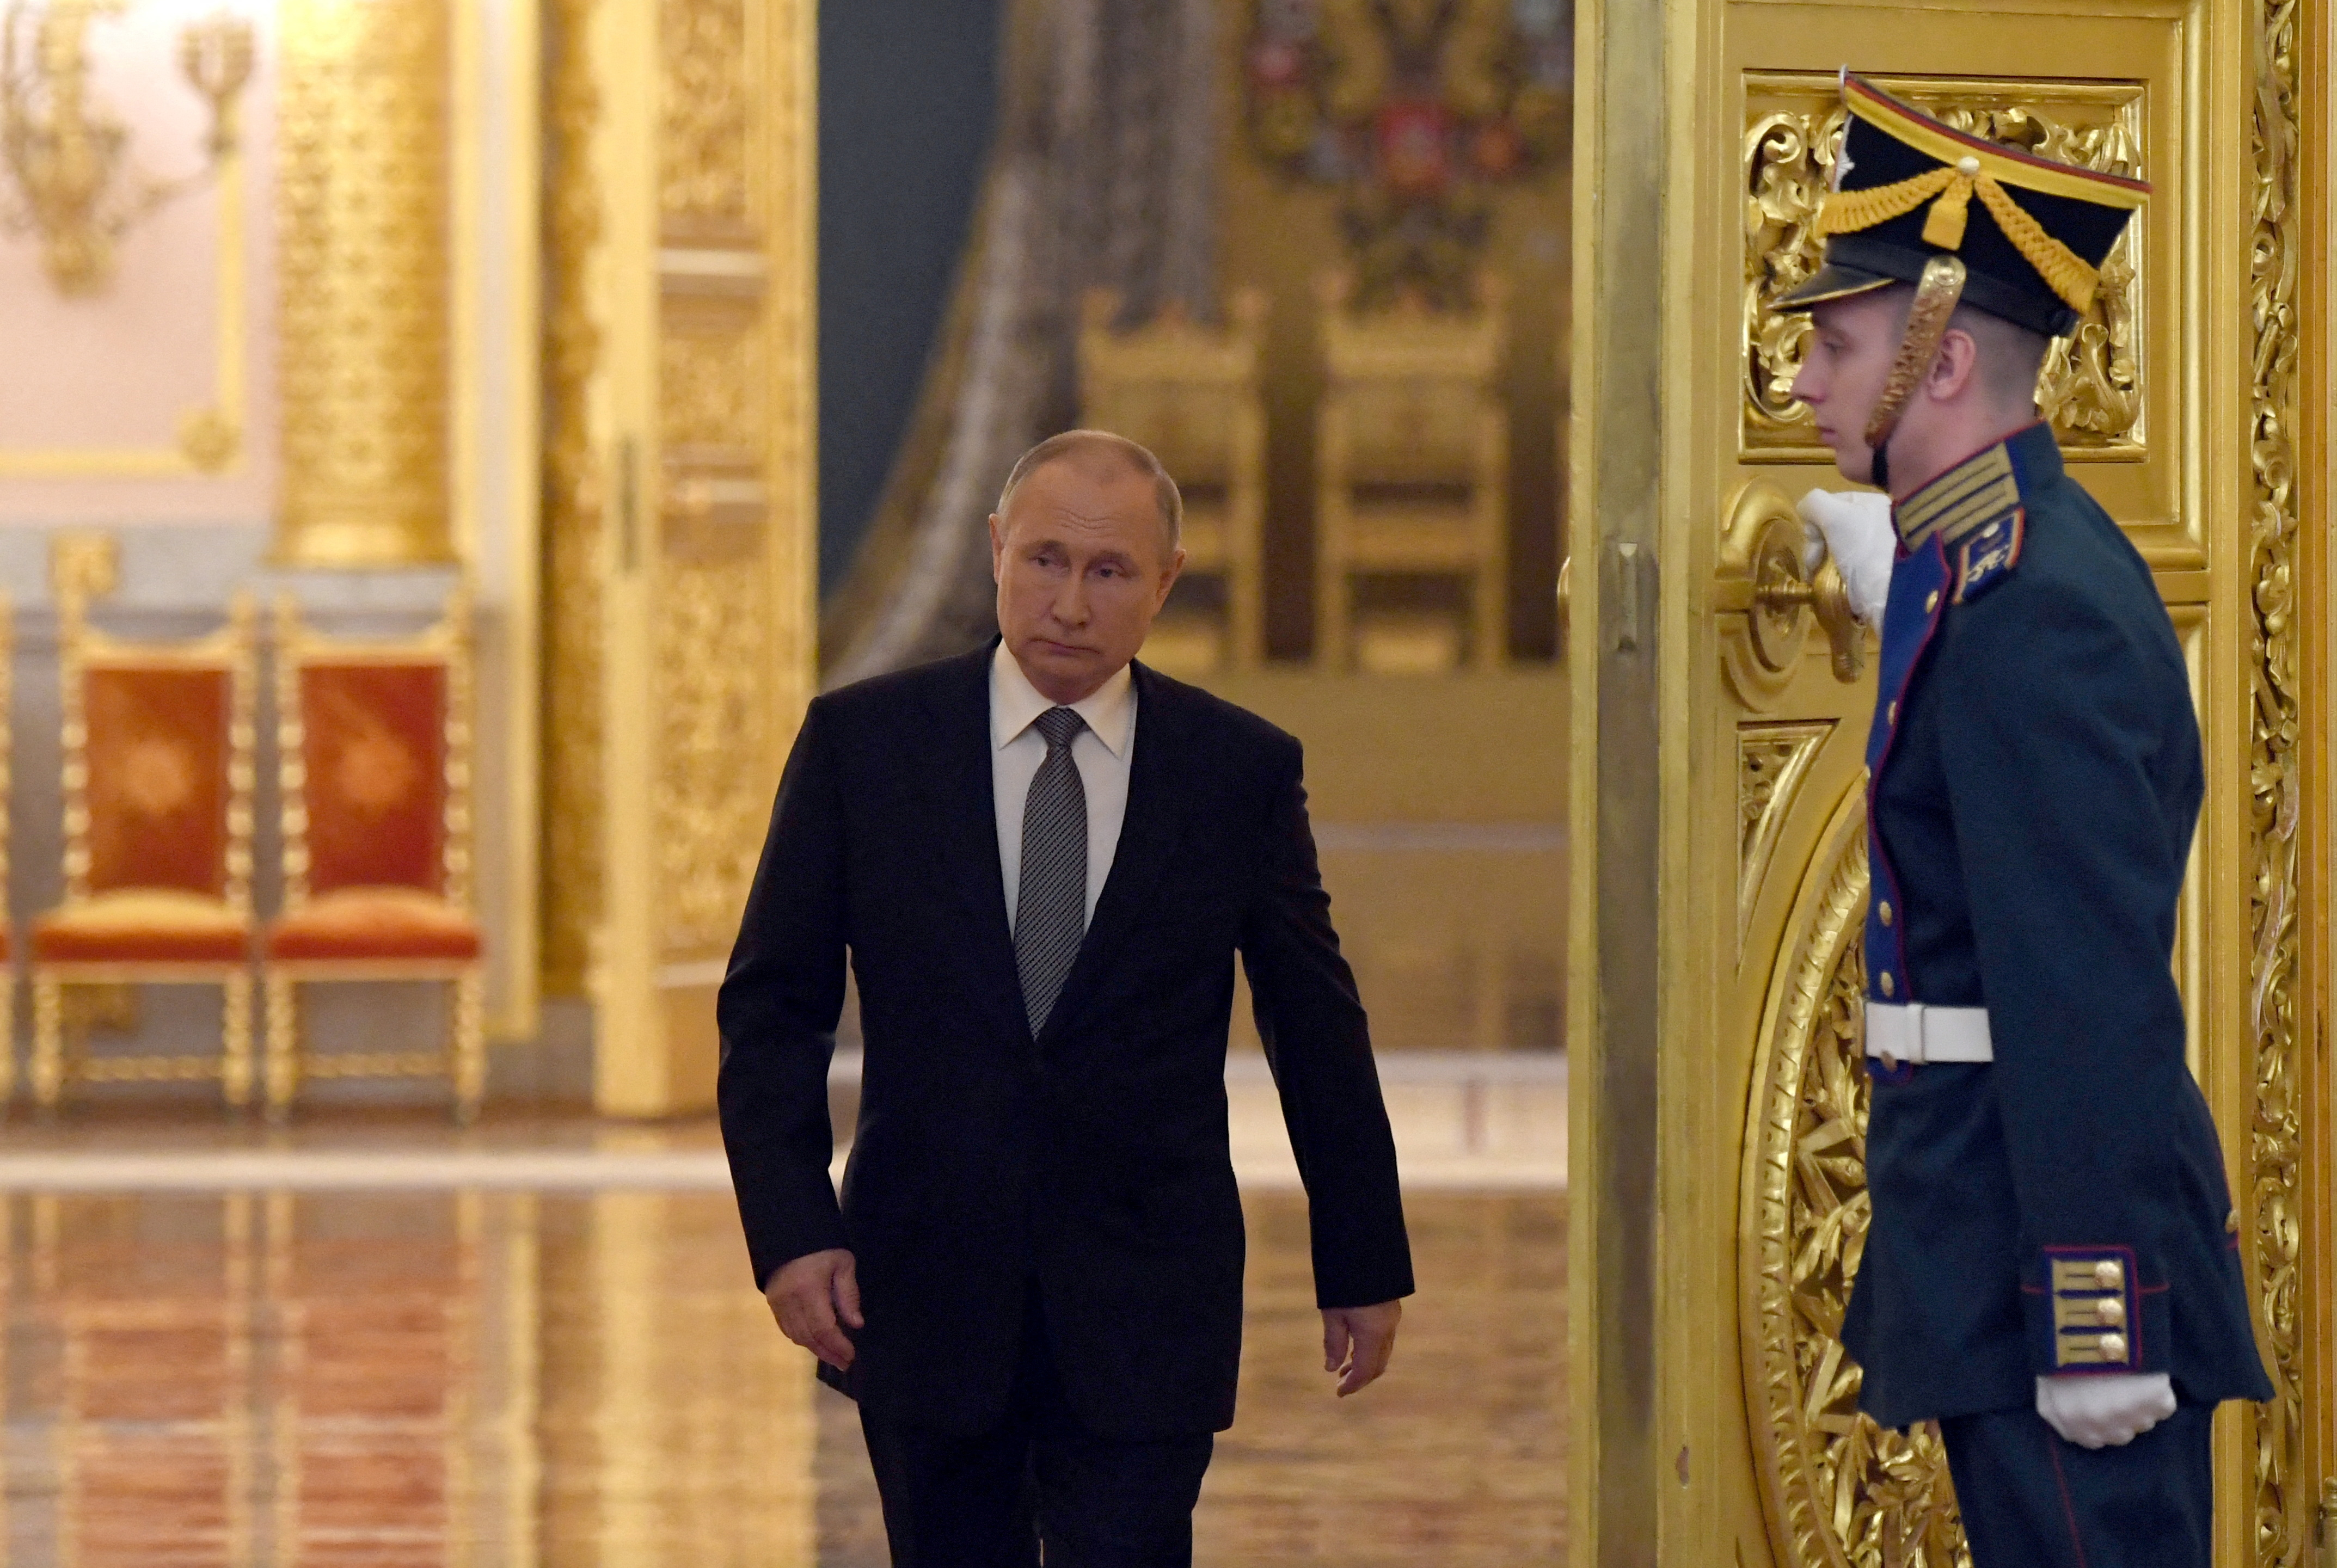 El presidente de la Federación Rusa, Vladimir Putin.